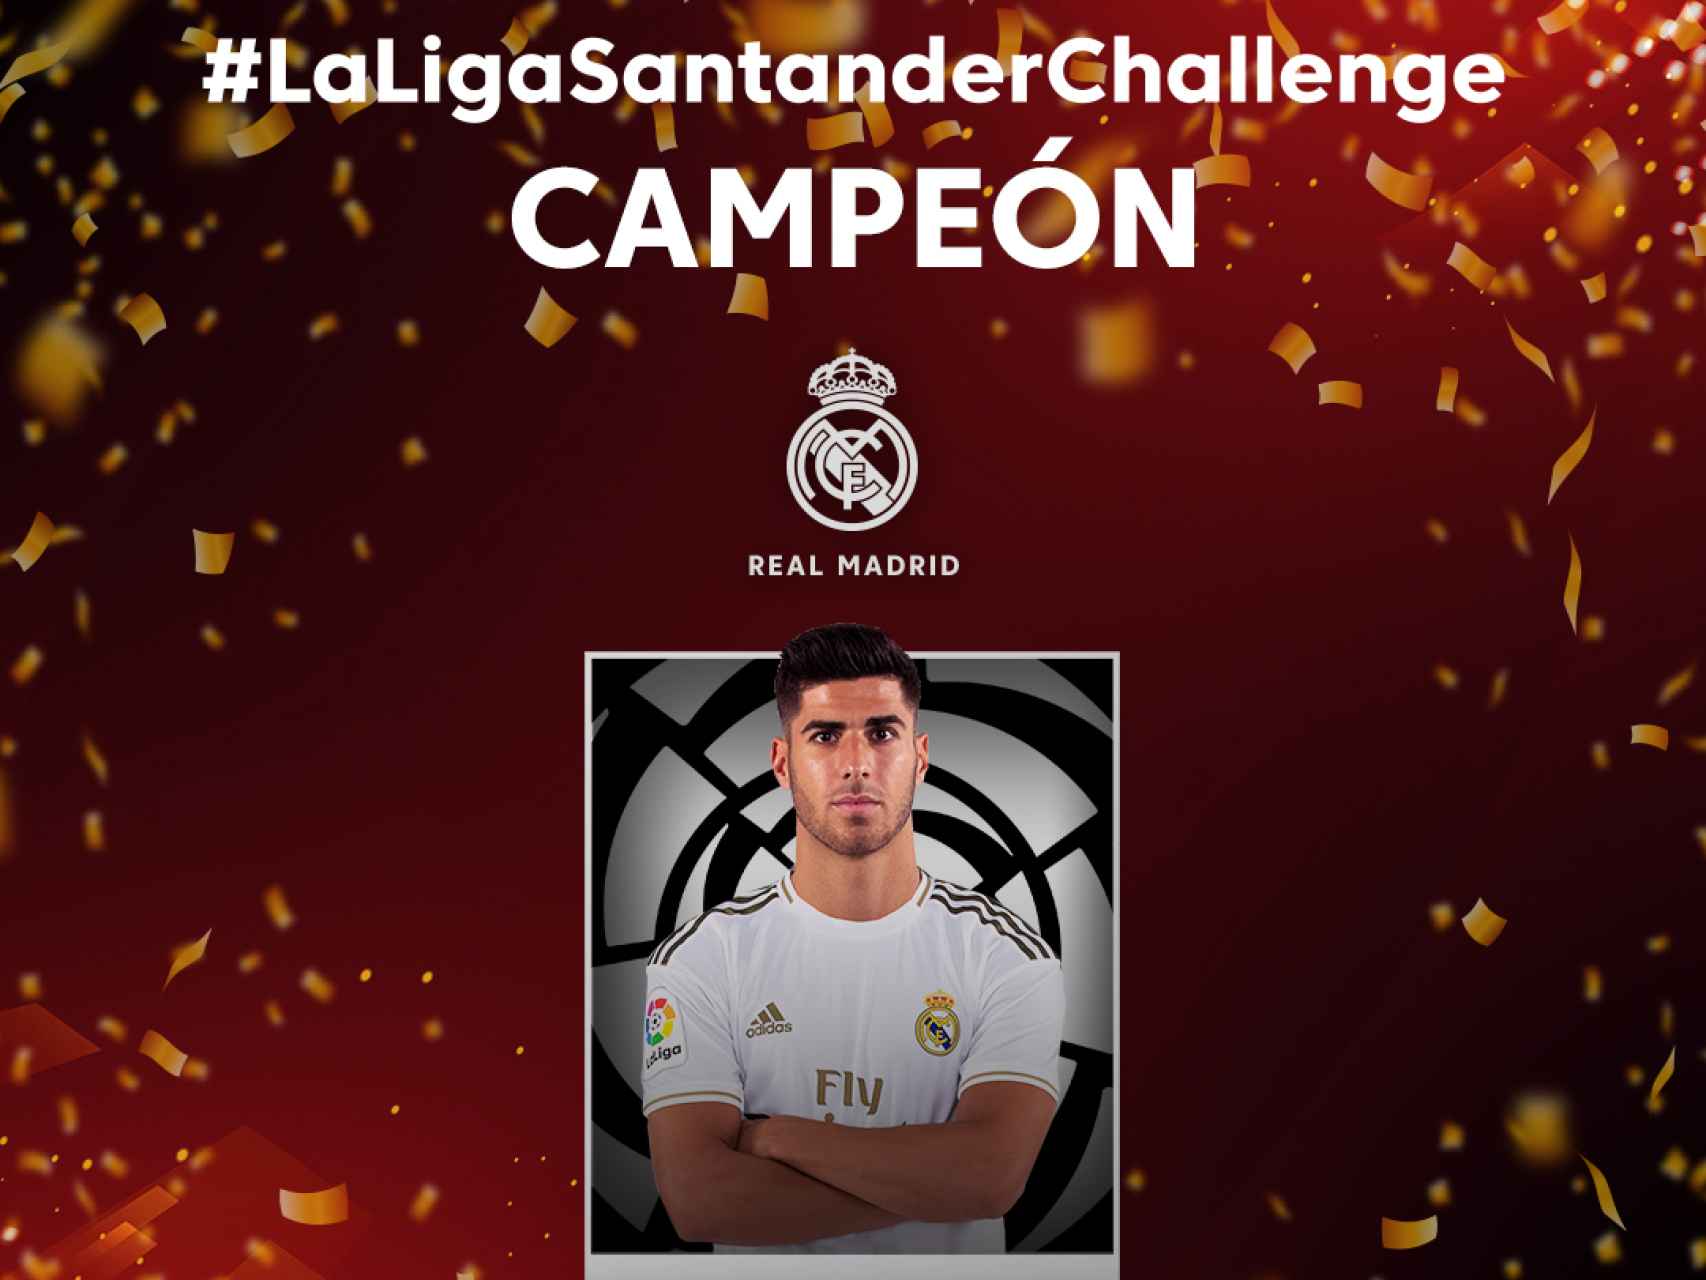 Marco Asensio y el Real Madrid, campeones de LaLiga Santander Challenge de Ibai Llanos